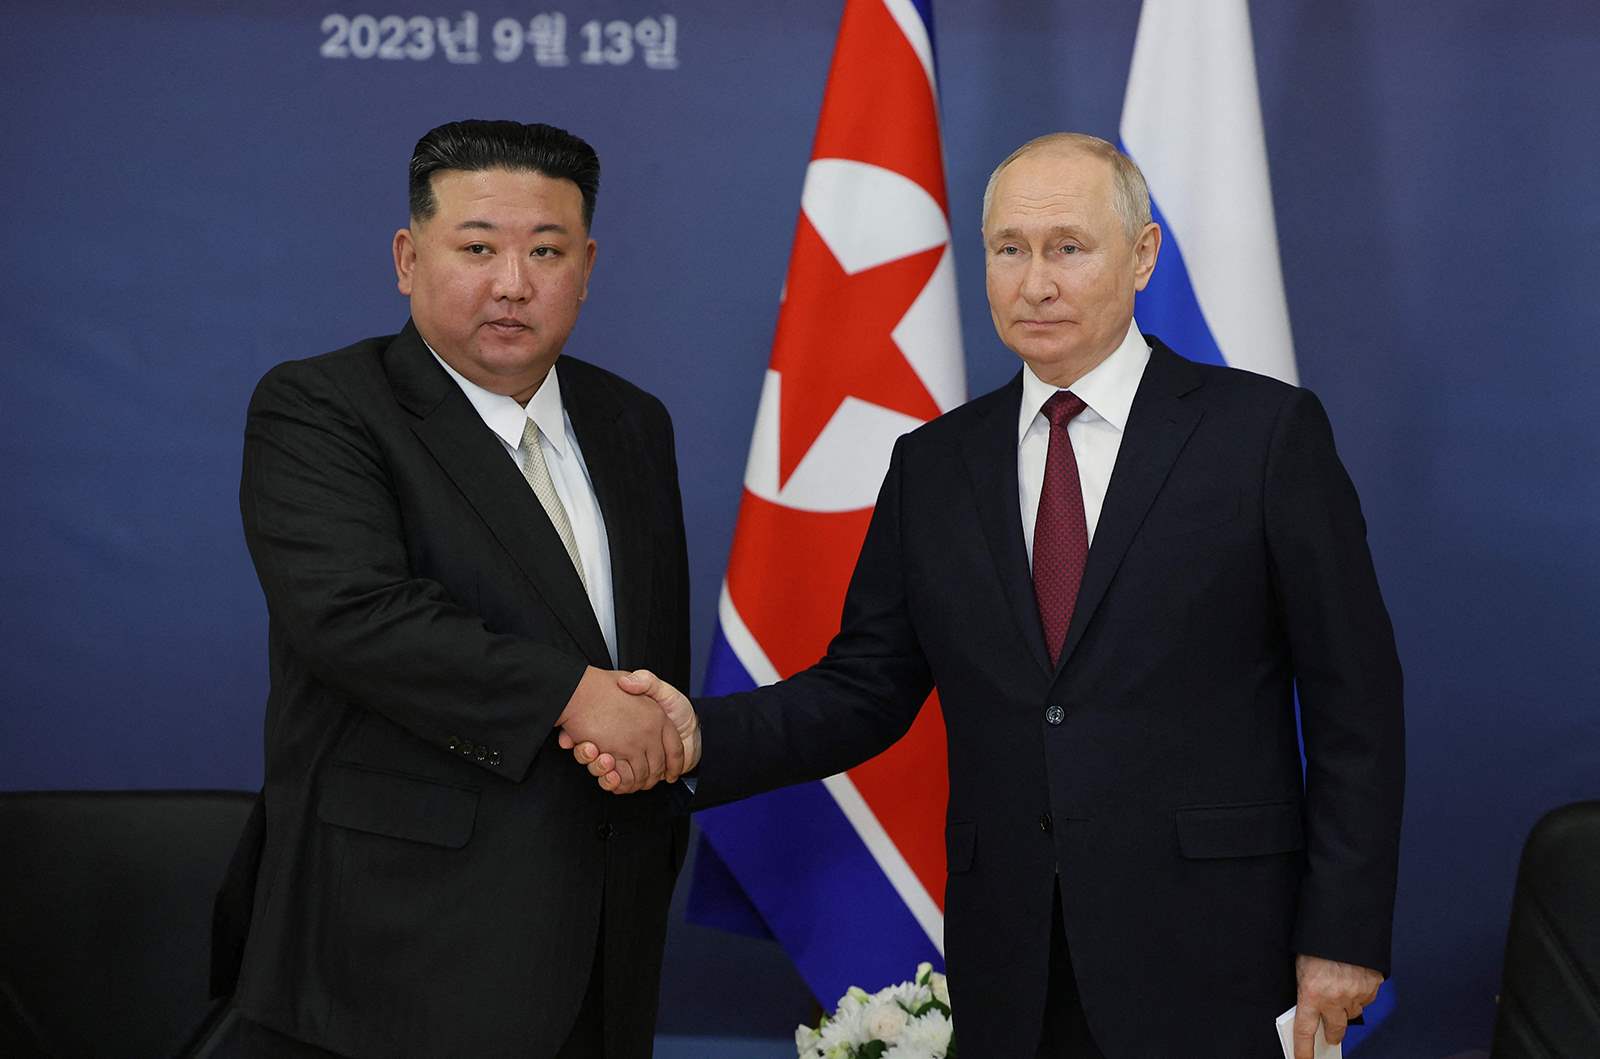 بوتين يقبل دعوة من كيم لزيارة كوريا الشمالية